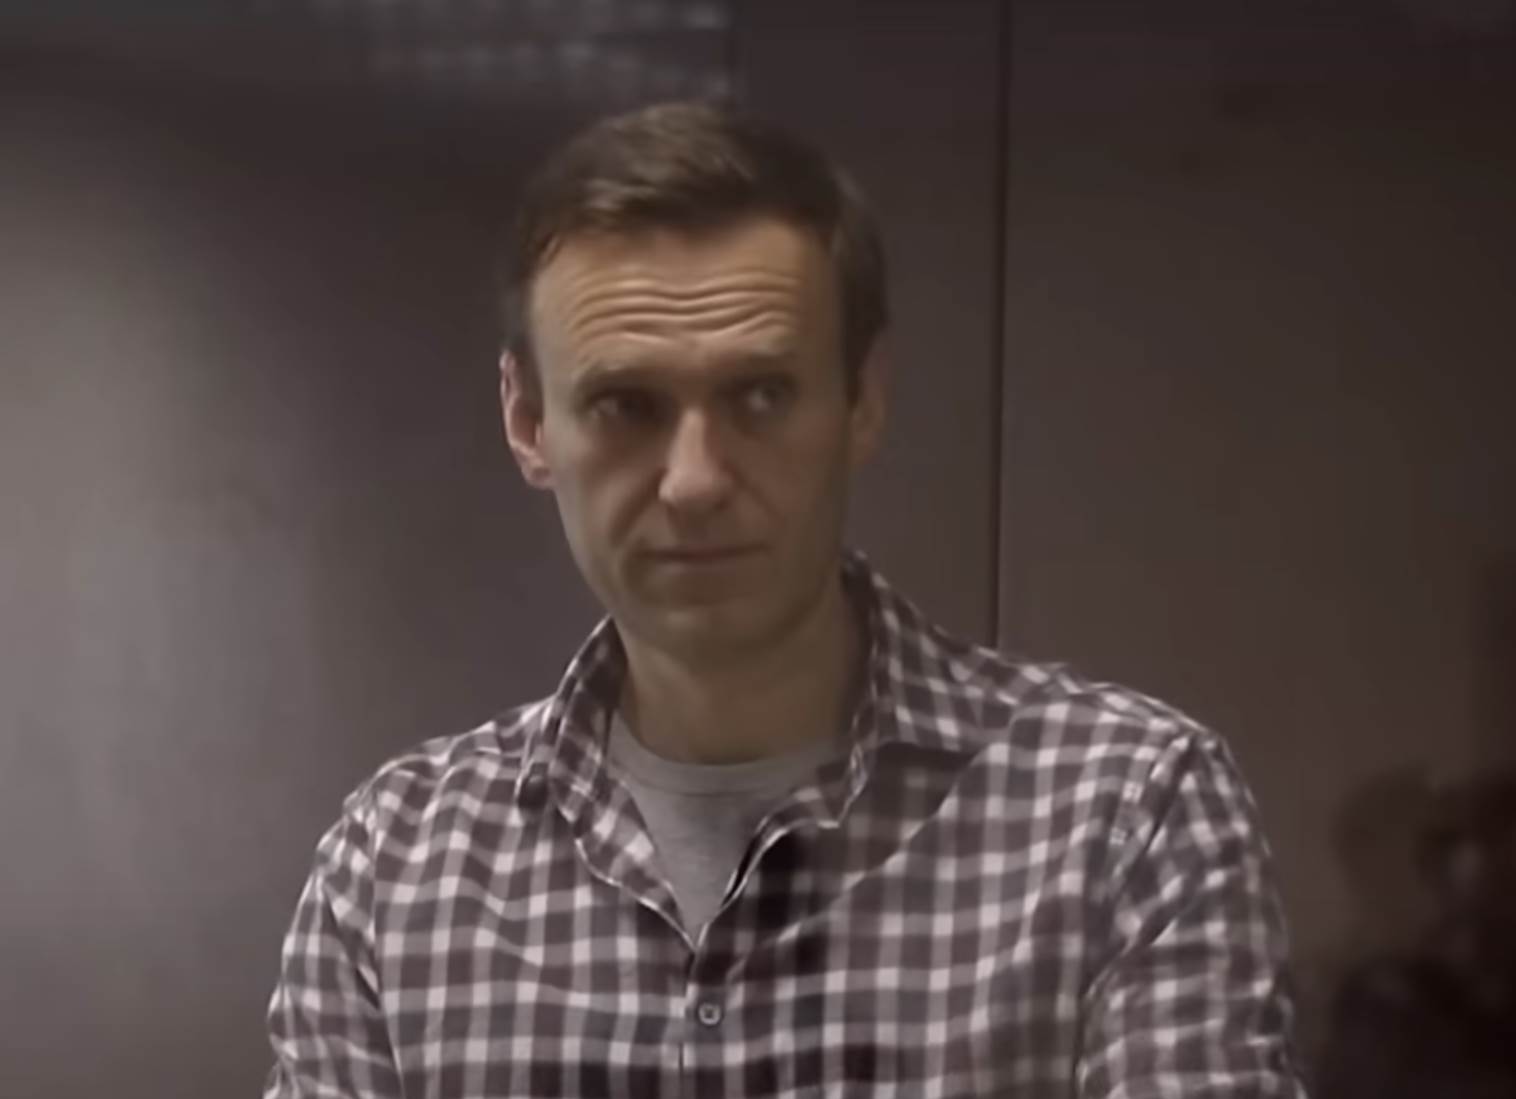  Kad će biti predato telo Alekseja Navaljnog 